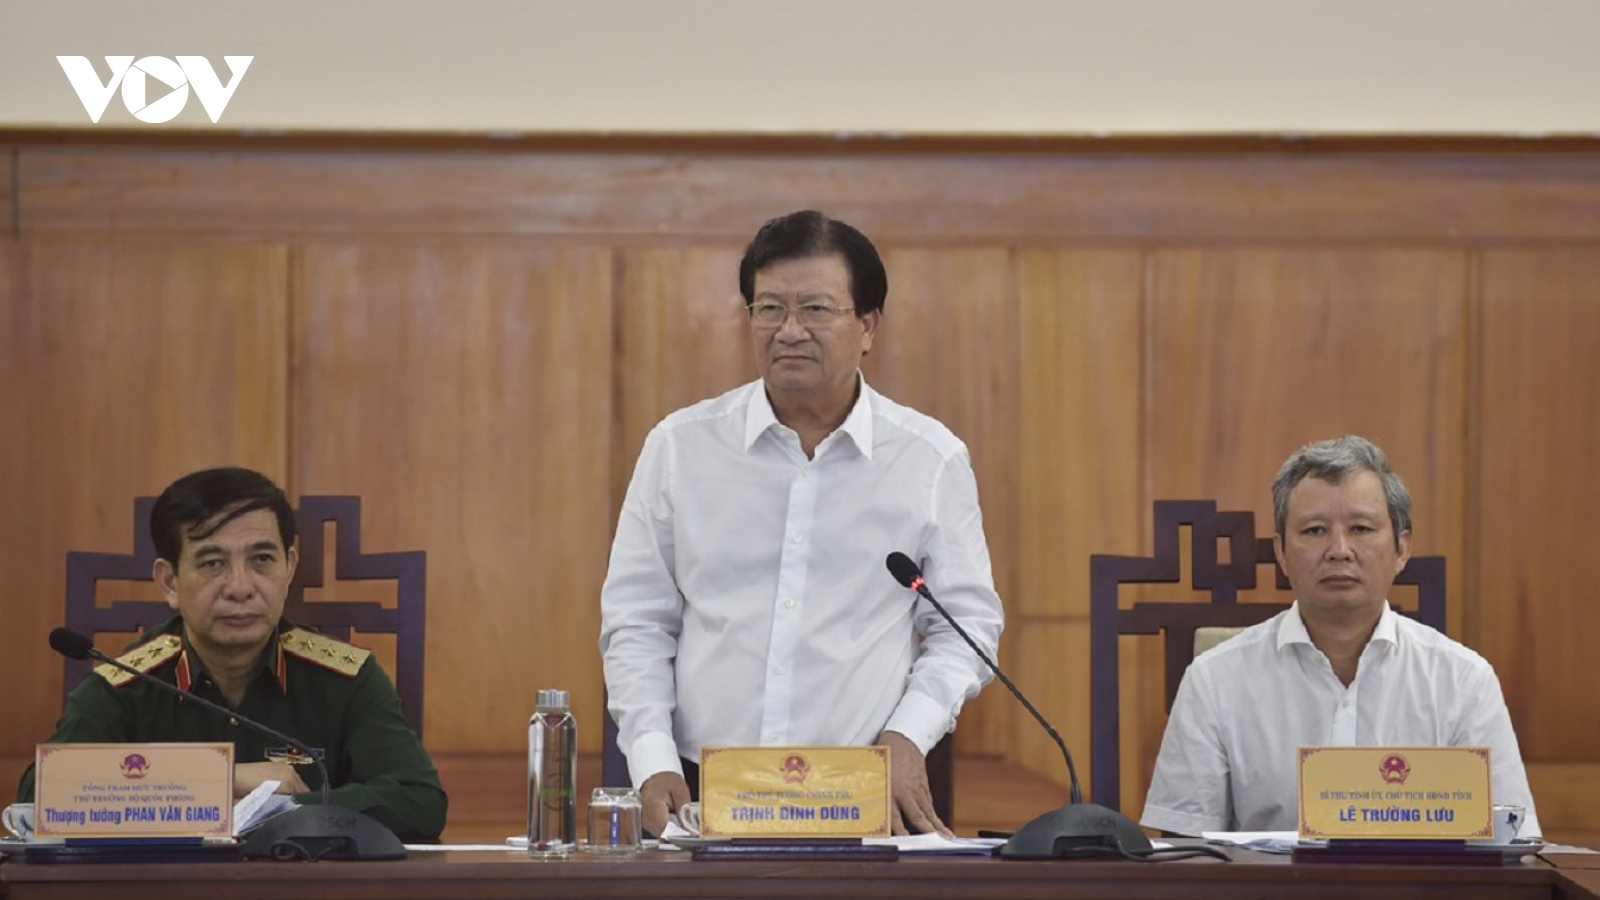 Phó Thủ tướng Trịnh Đình Dũng chỉ đạo về phòng chống lụt bão và cứu nạn ở Rào Trăng